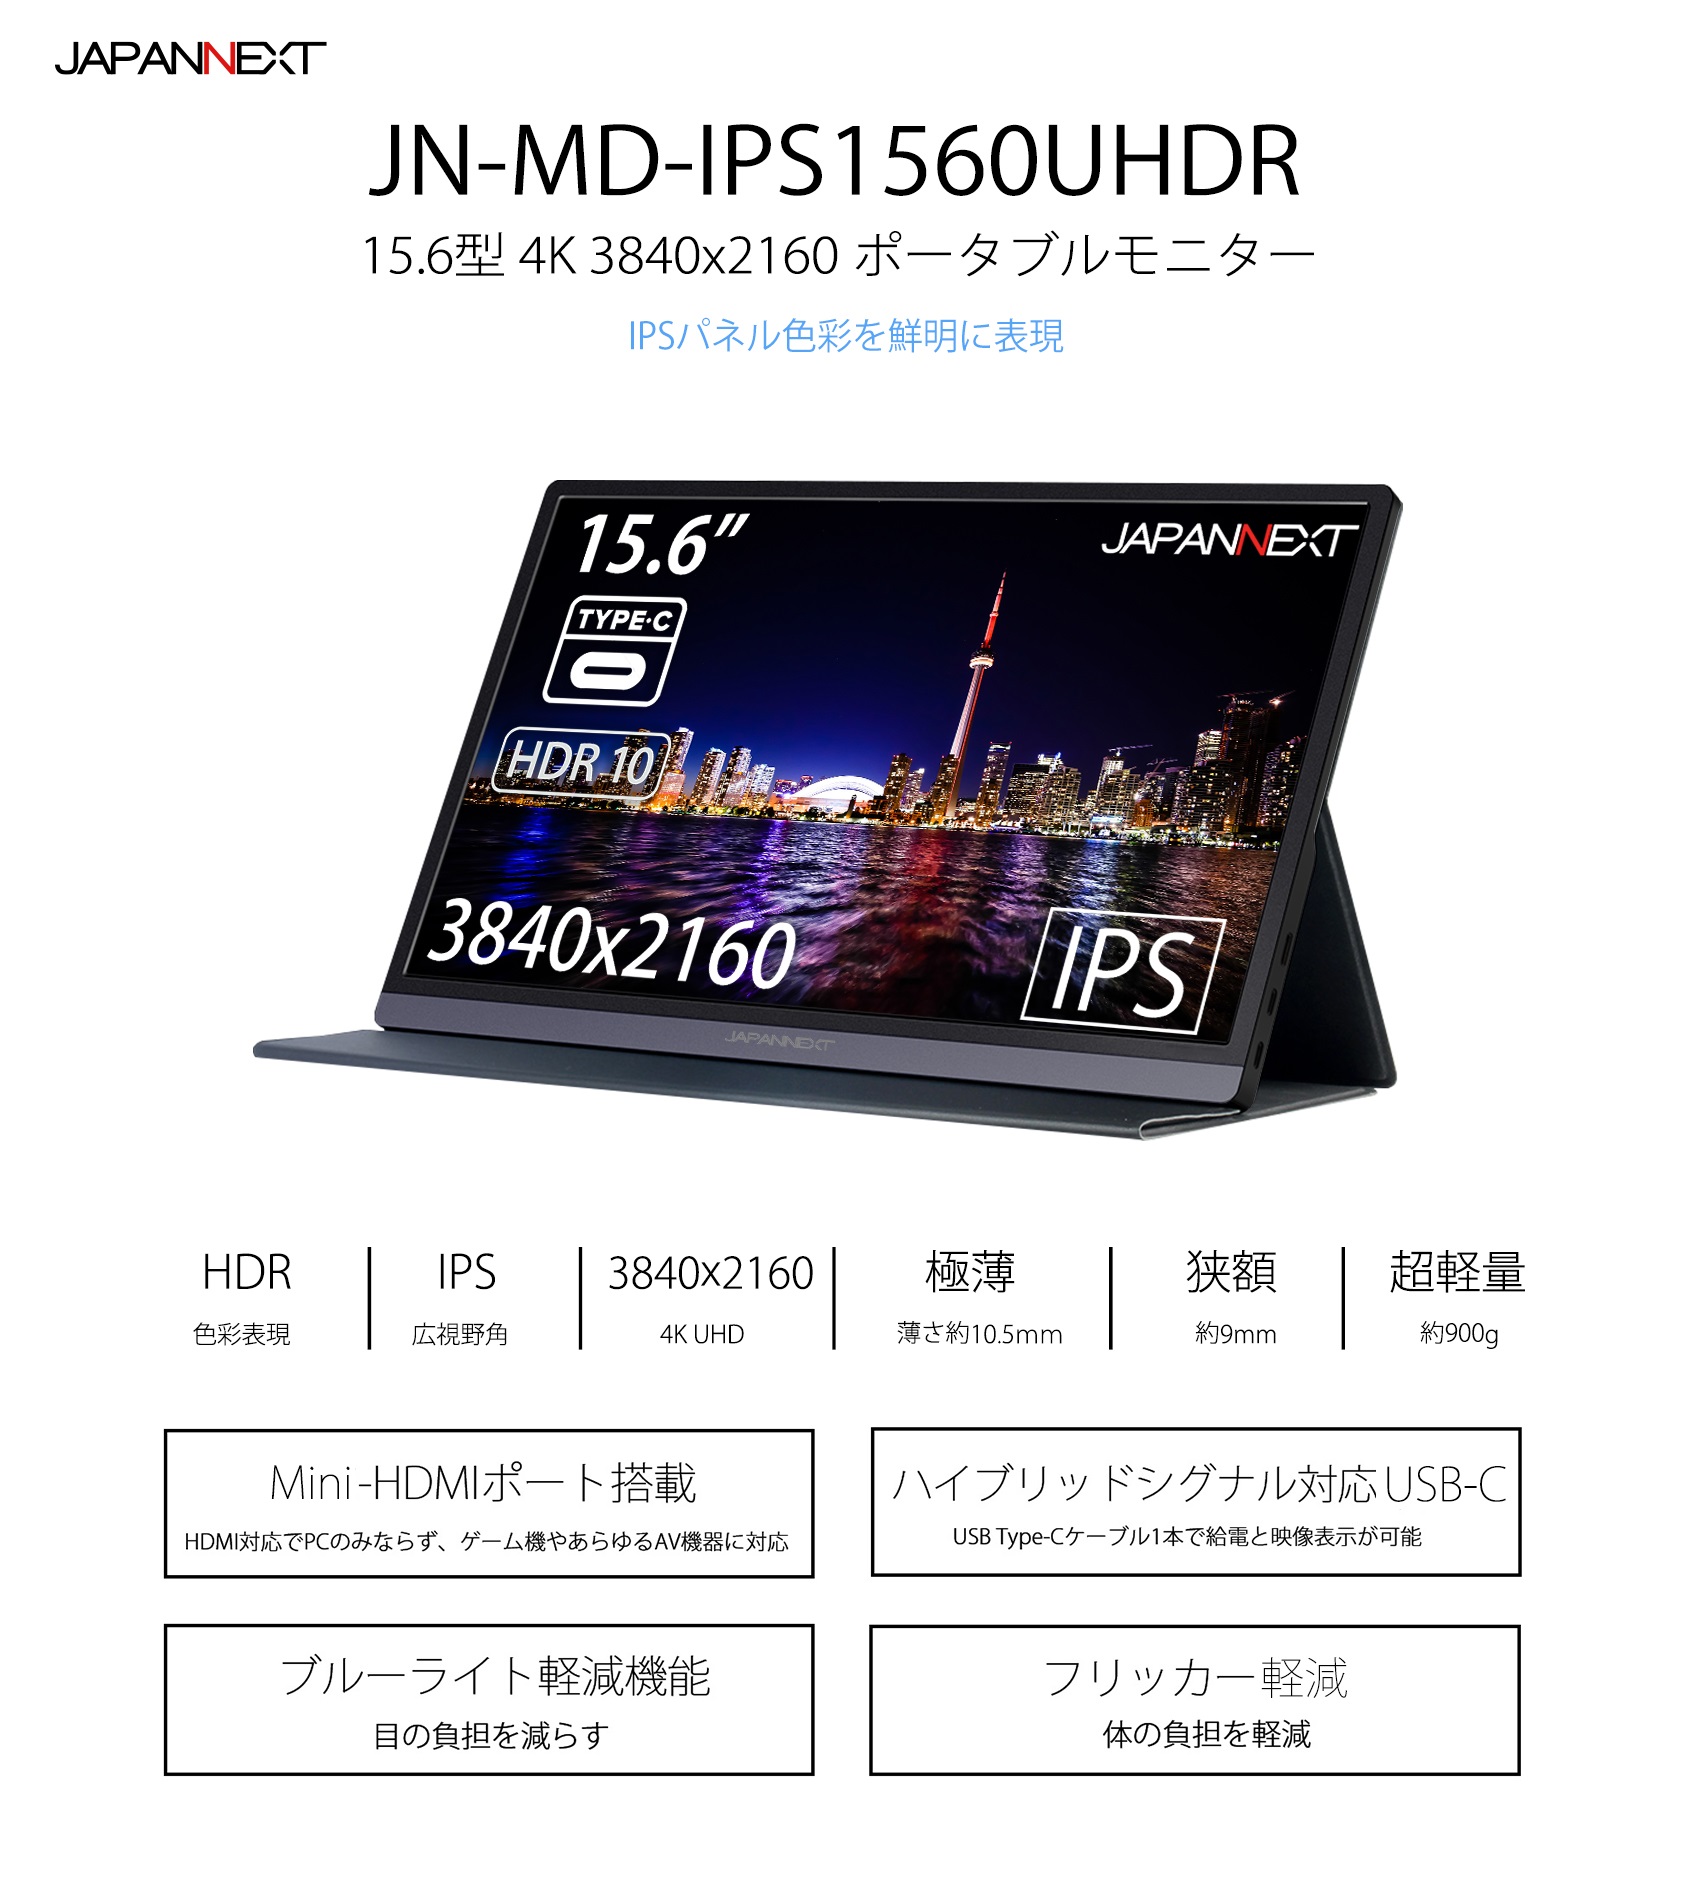 JAPANNEXT JN-MD-IPS1560UHDR (15.6型UHD モバイルディスプレイ / Type-C HDR対応  IPSパネル)-japannext